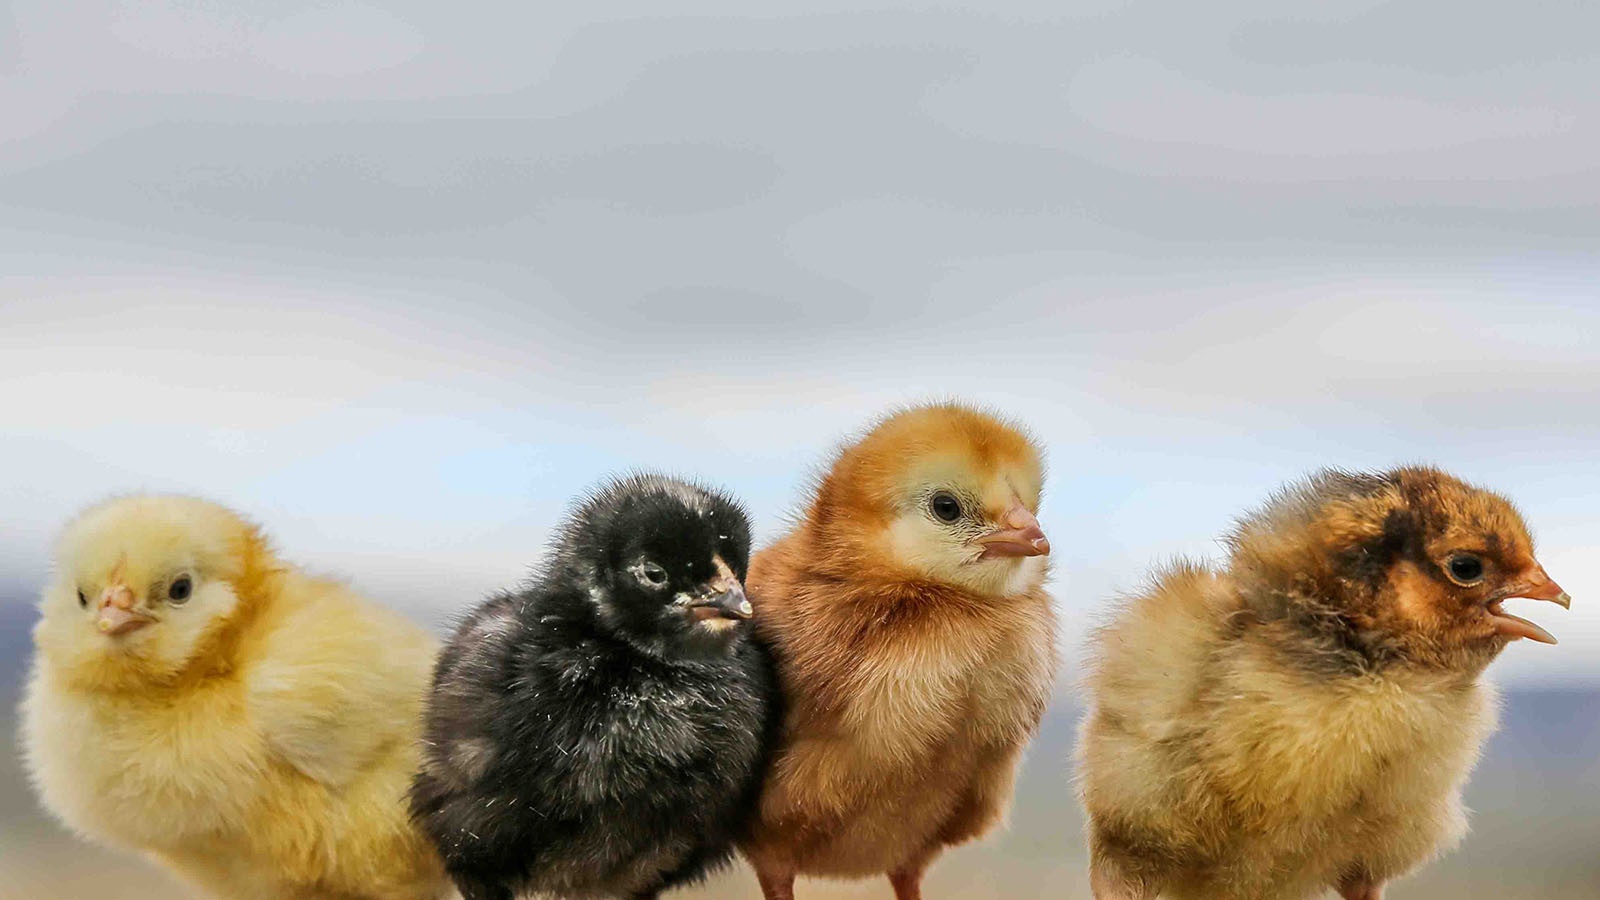 Curious chicks.